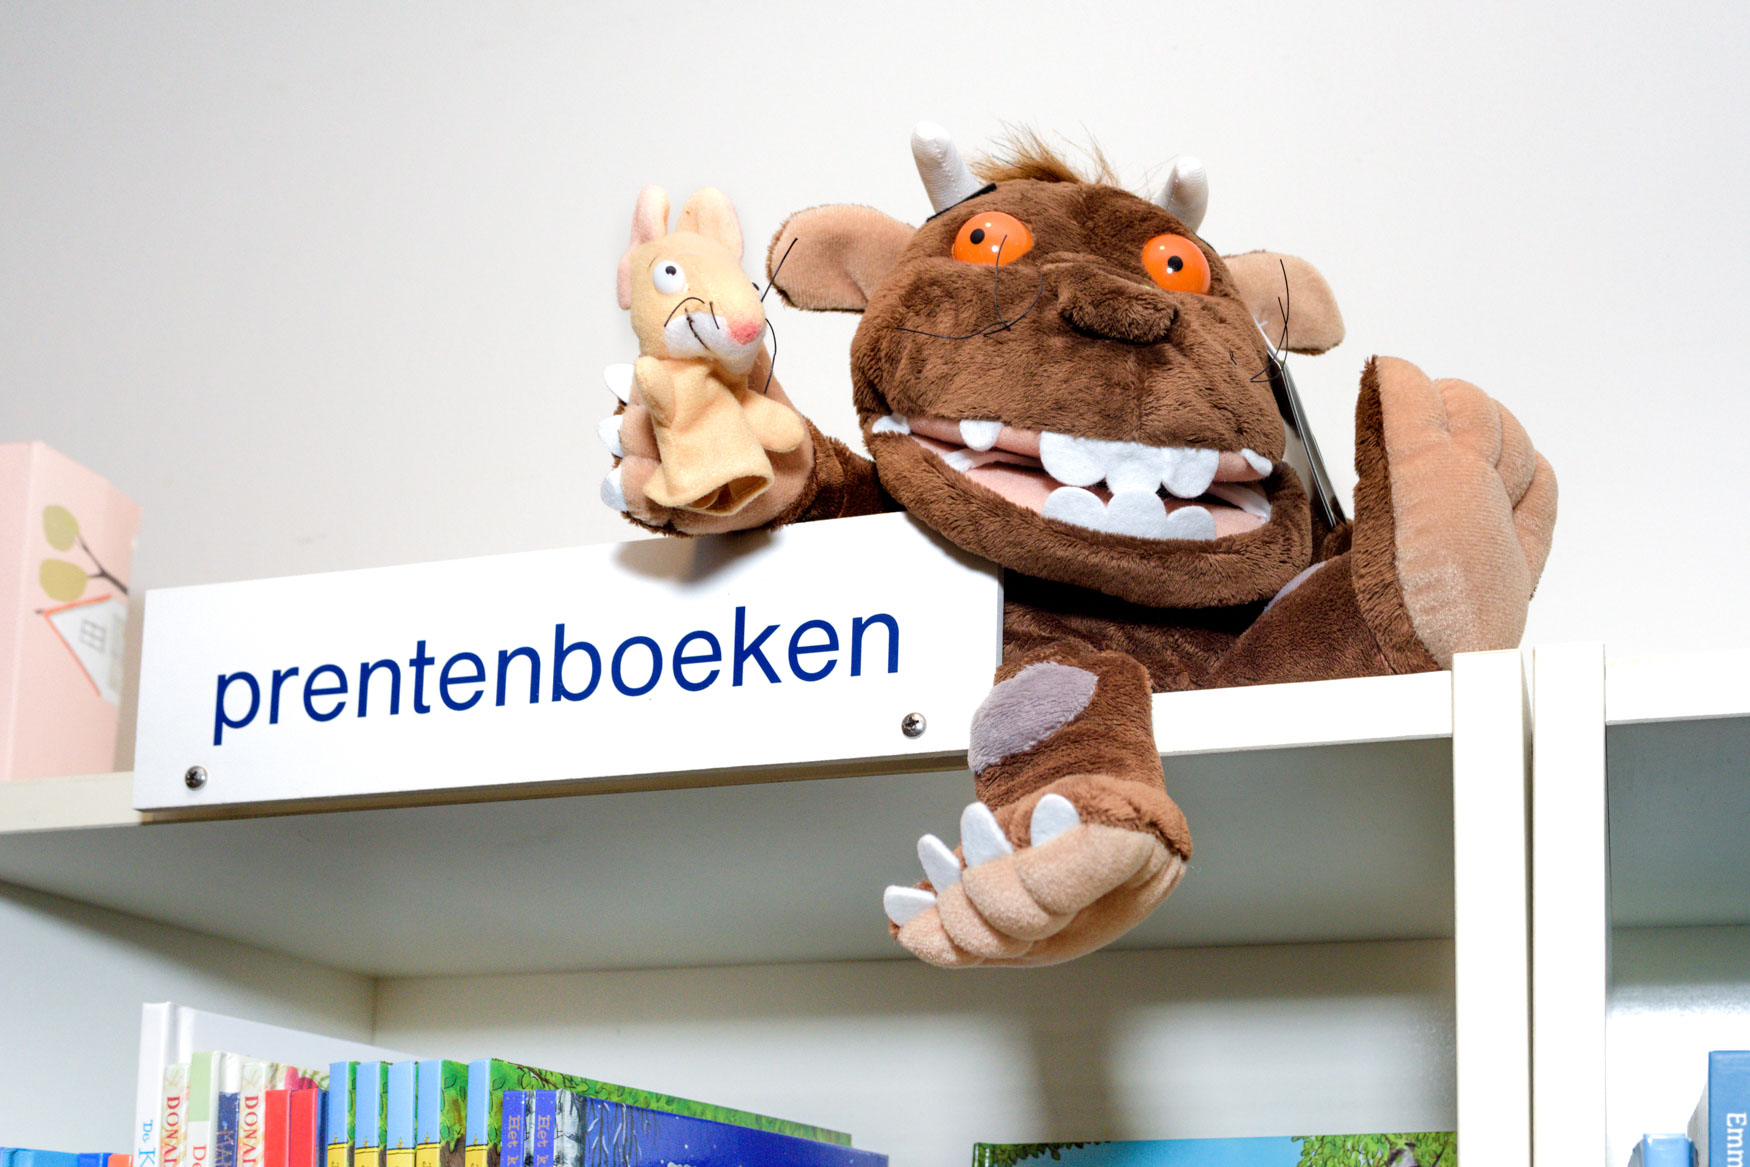 Kinderboekenwinkel De Boekenberg in Eindhoven voor De volkskrant | Sas Schilten Fotografie